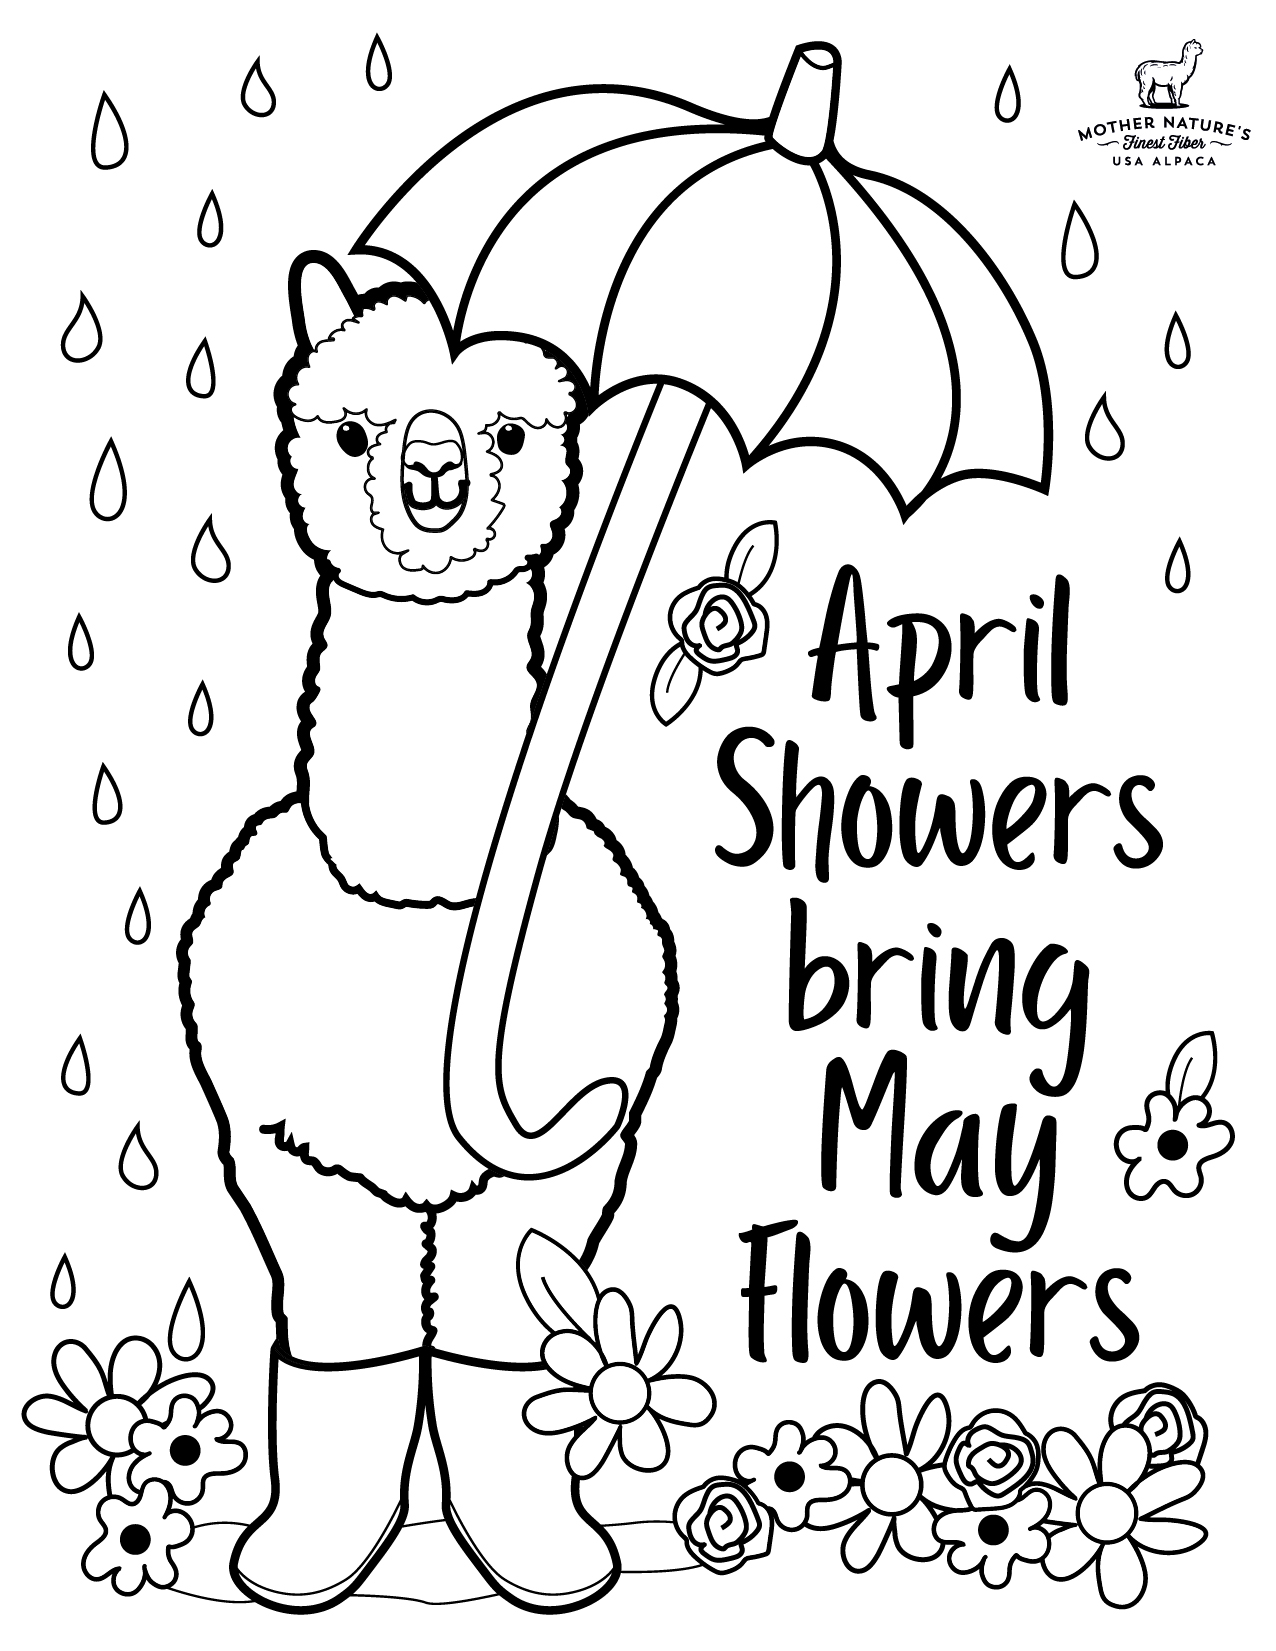 April Showers Coloring Pages Free Pdf - alpaca April Showers Coloring Pages